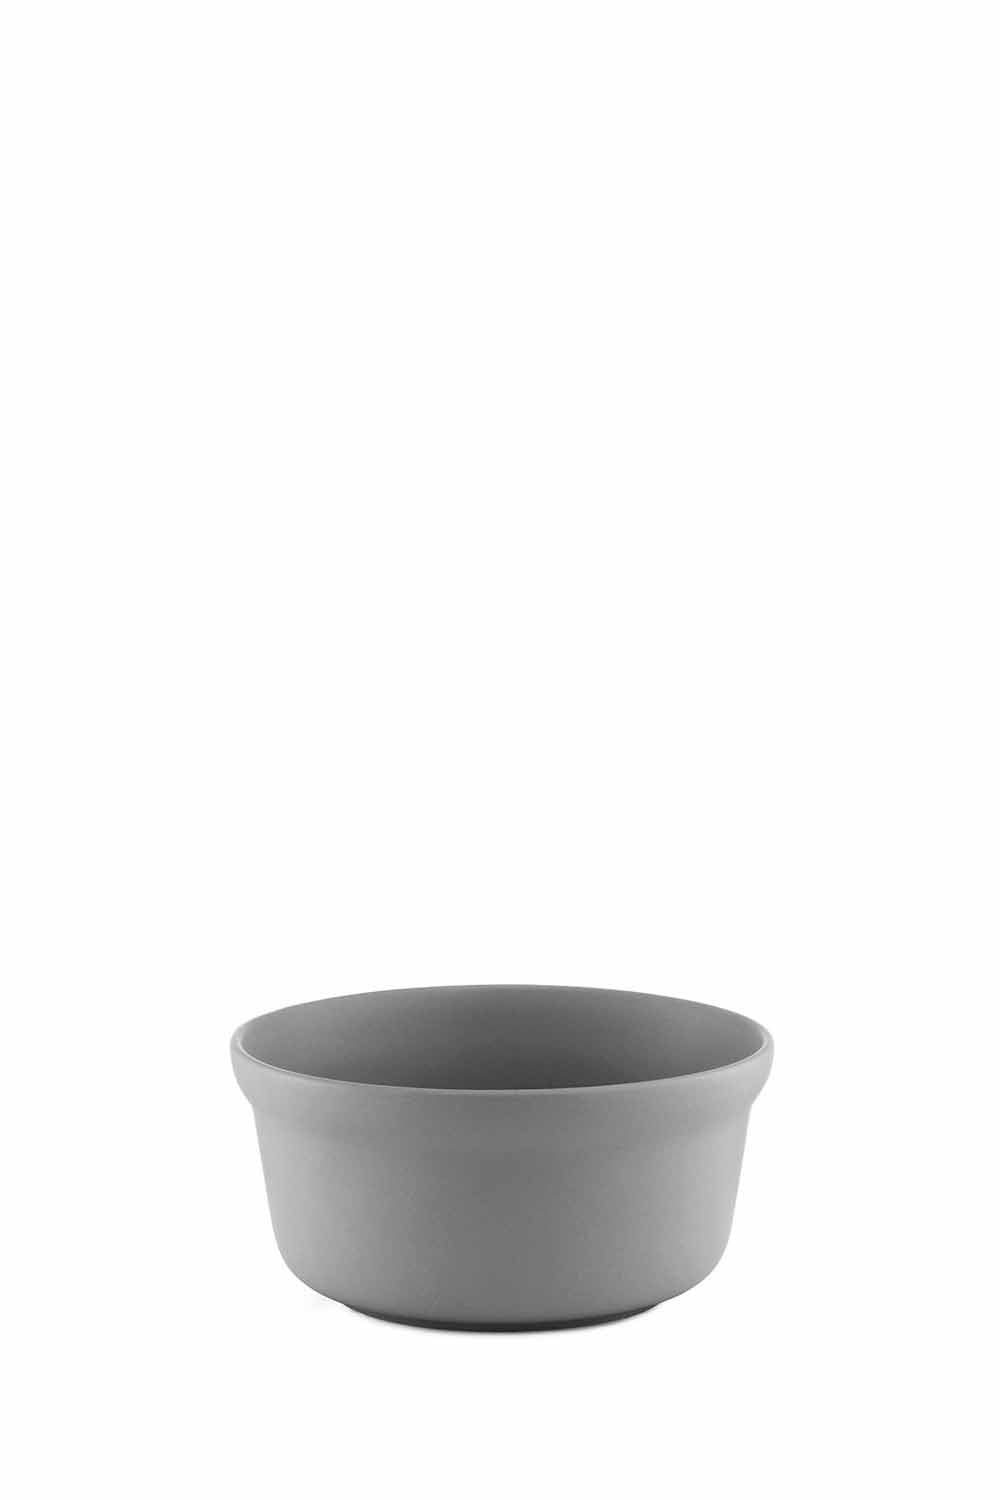 Obi Bowl, 14cm, Grey